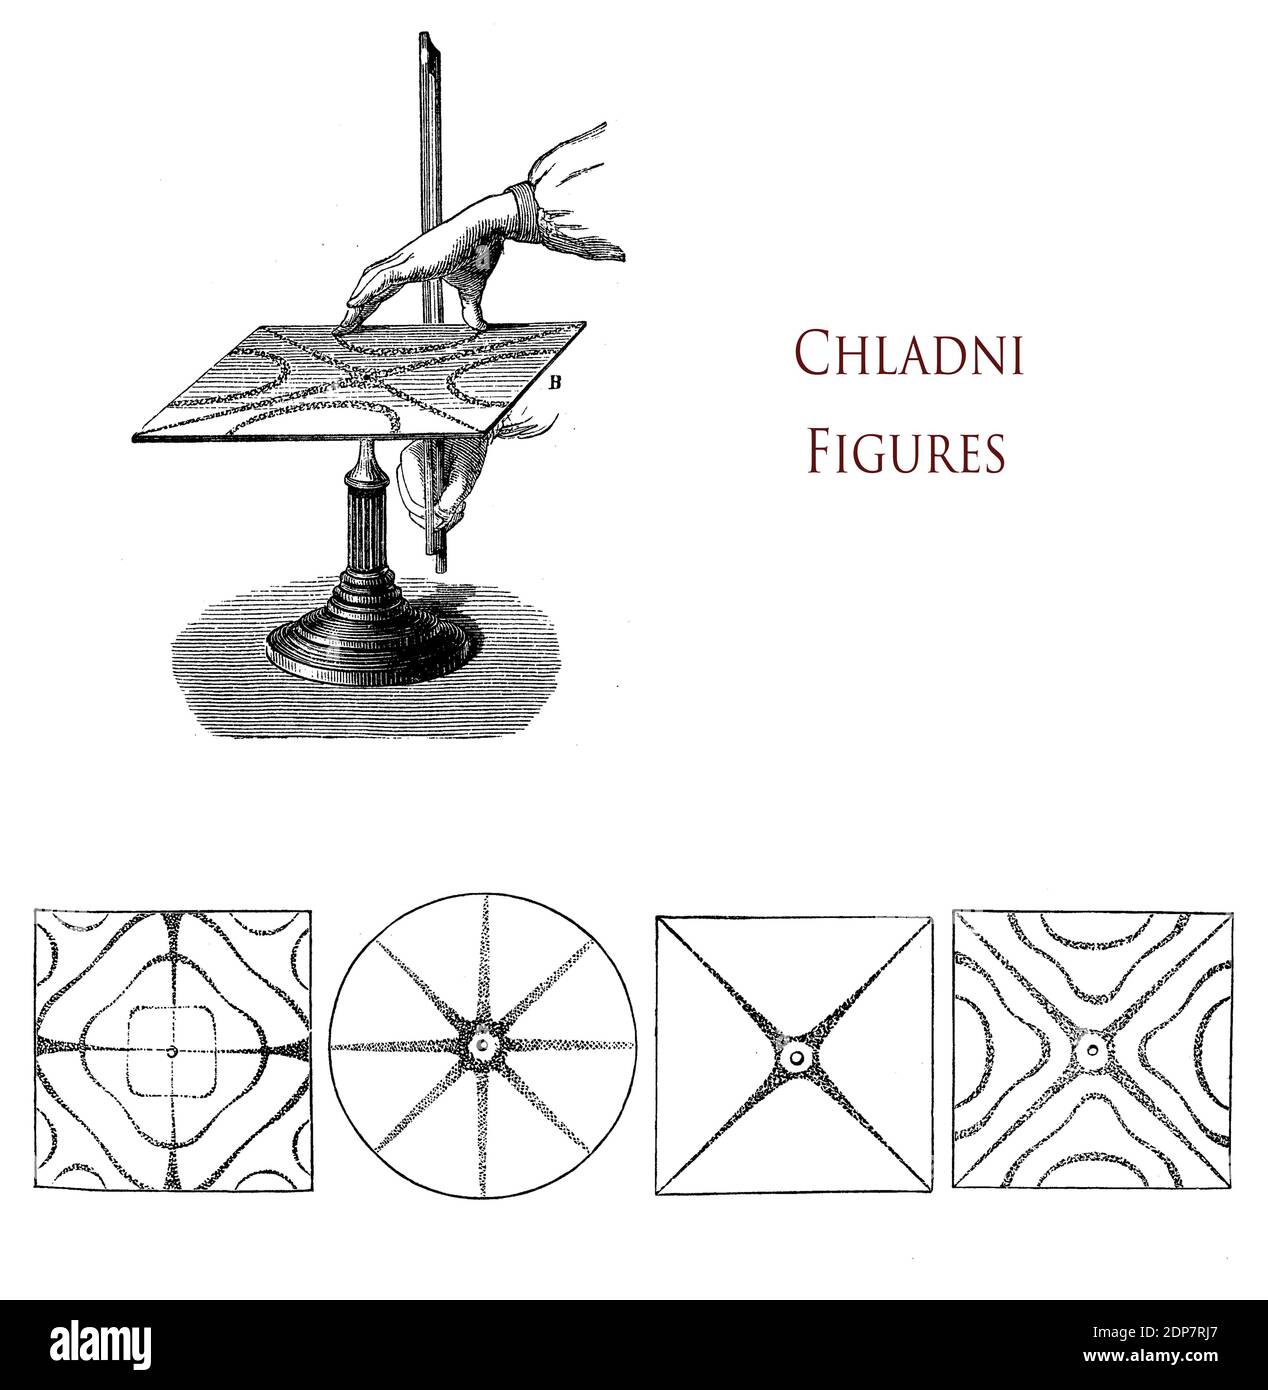 Chladni Figuren sind knotenartige Resonanzmuster, die durch Schwingungen auf einer starren Oberfläche wie eine Glasplatte entstehen, eine Technik, die von Ernst Chladni deutscher Physiker erfunden und auch beim Bau von Musikinstrumenten verwendet wurde. Stockfoto